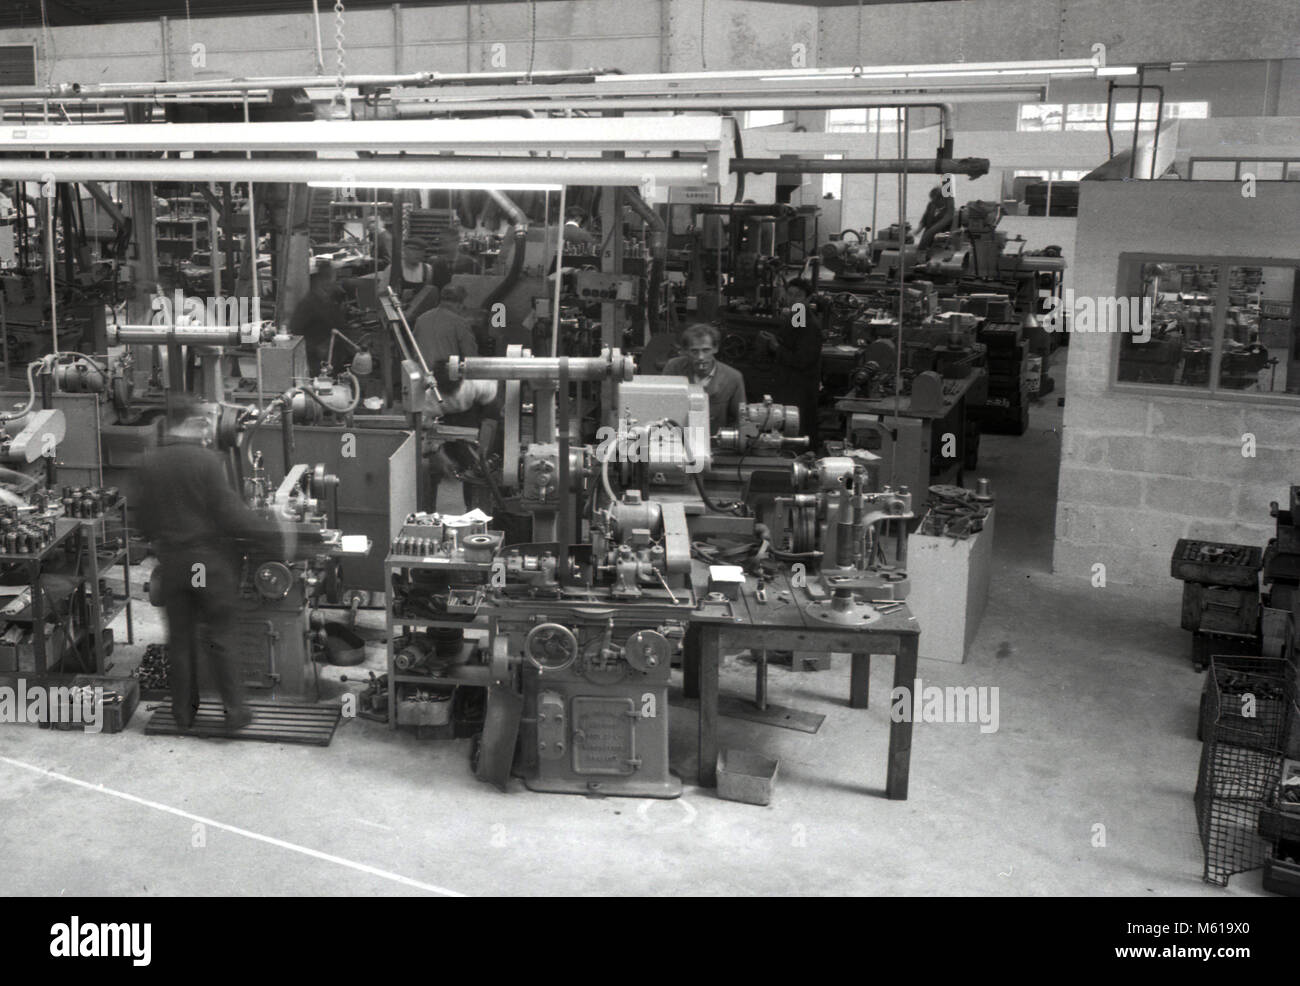 1960, histórico, en el piso de una fábrica de ingeniería, trabajadores de la metalurgia tornos haciendo piezas de metal para la industria, Inglaterra, Reino Unido. Foto de stock